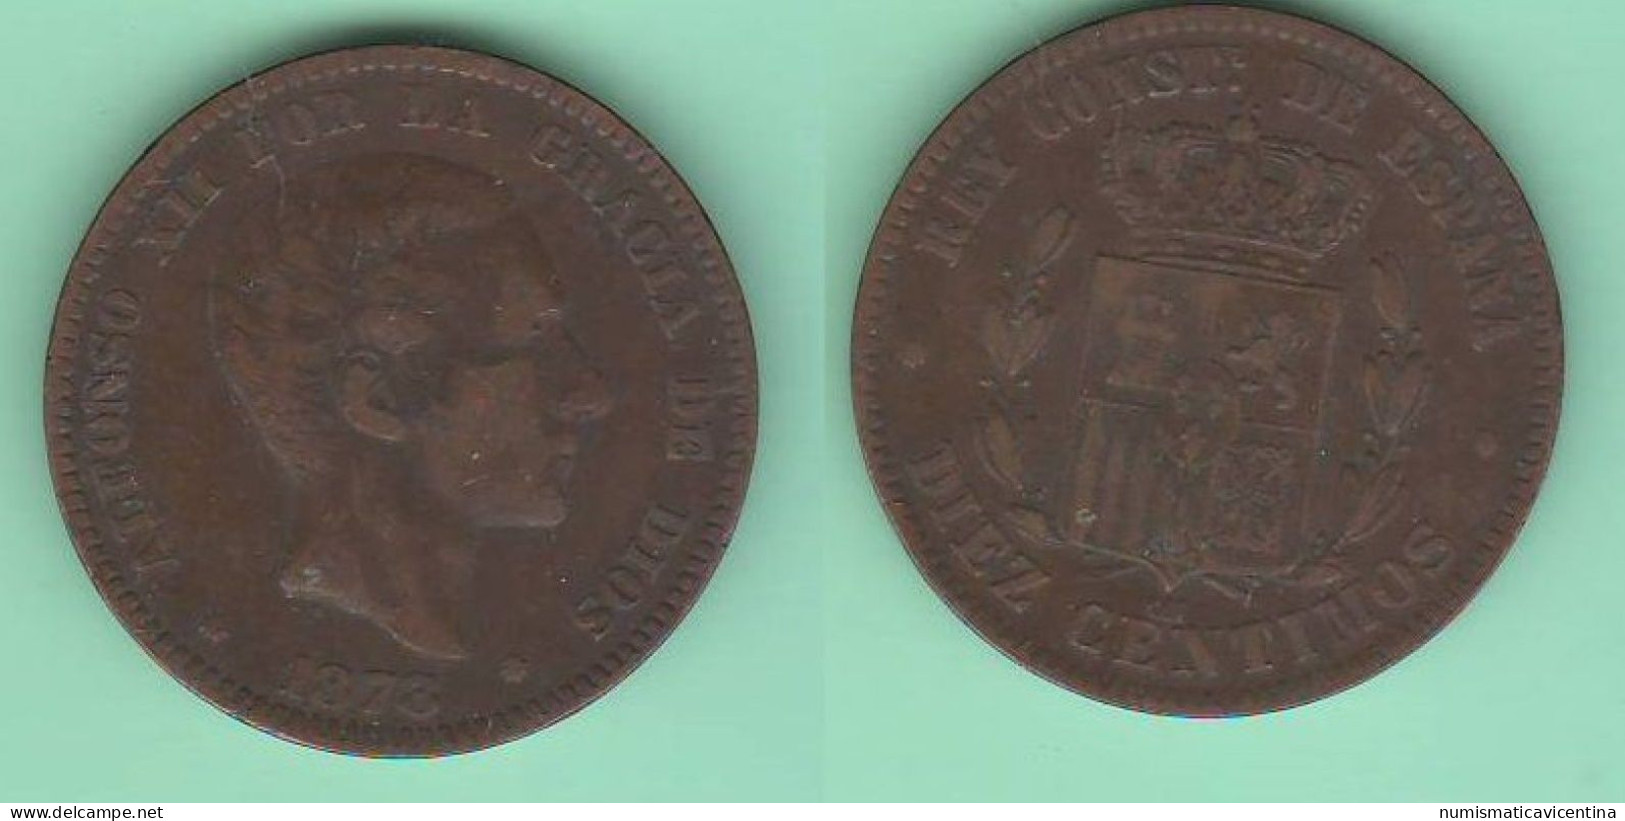 Spagna 10 Centimos 1878 Alfonso XII Espana Spain Espagne Bronze Coin - Monete Provinciali